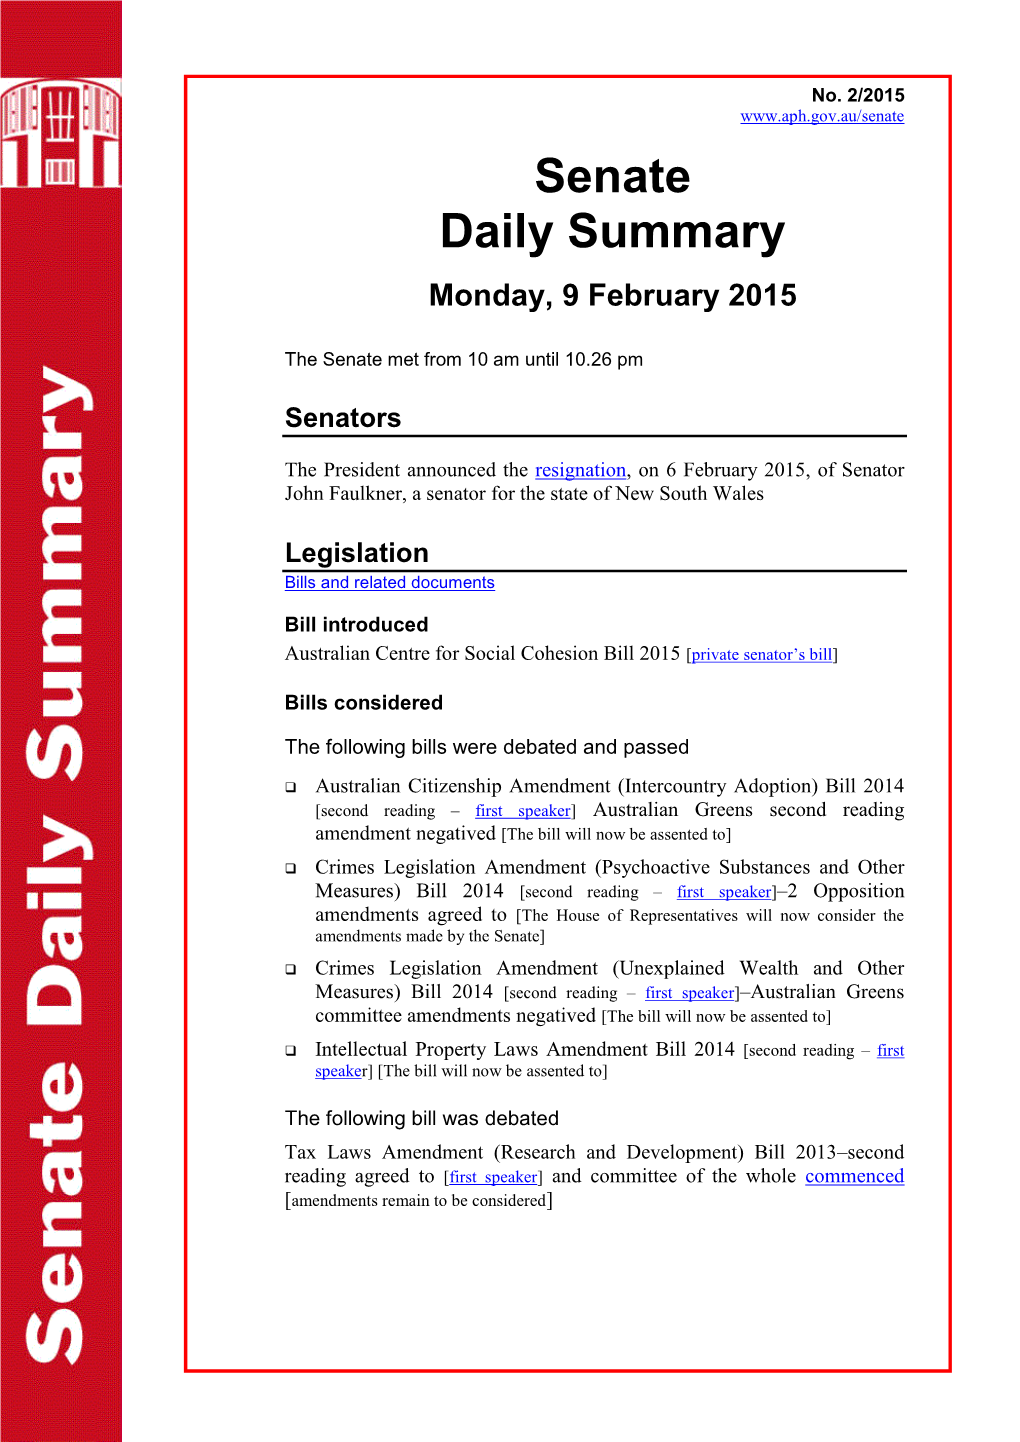 Senate Daily Summary